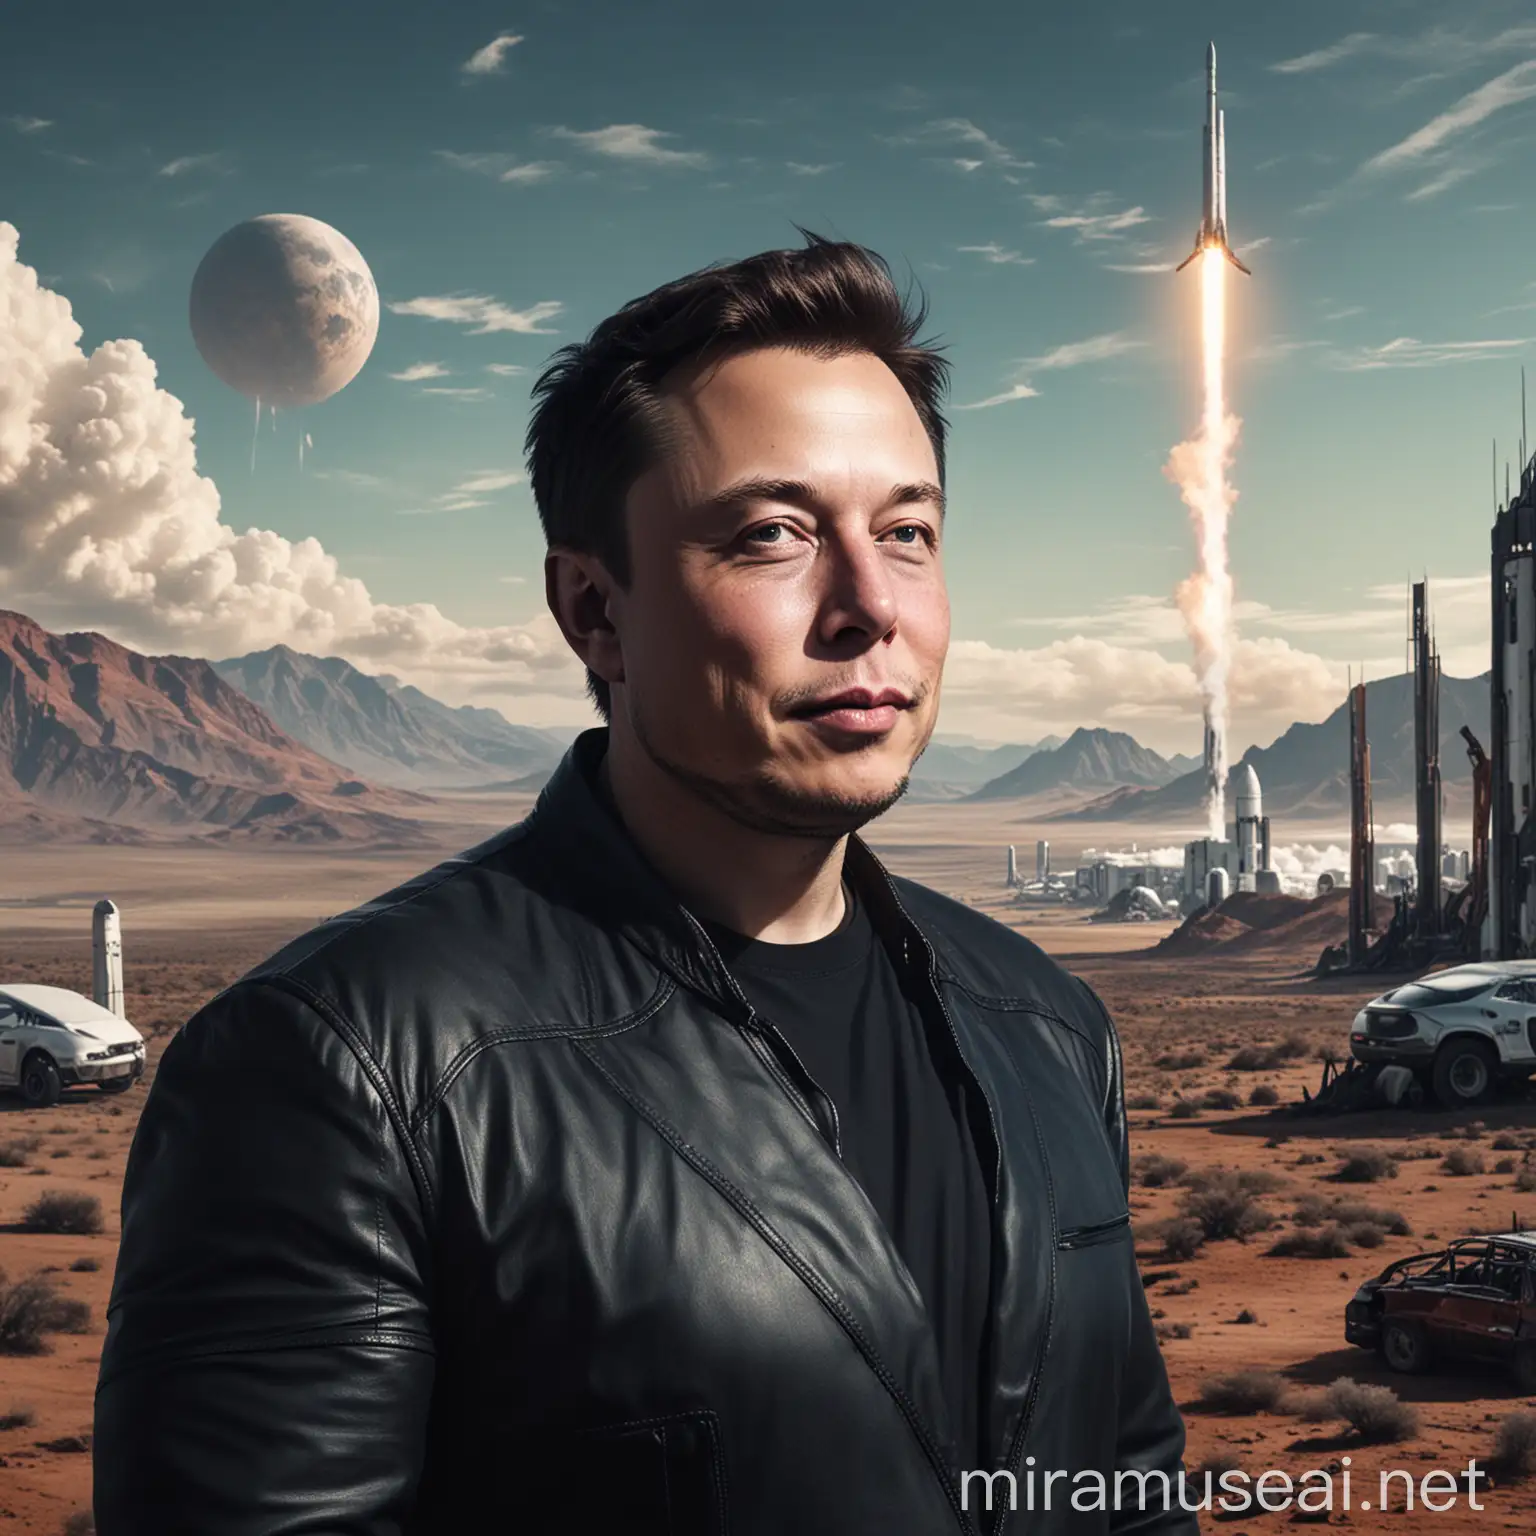 Elon Musks Vision Utopia and Dystopia Collide in Futuristic Landscape